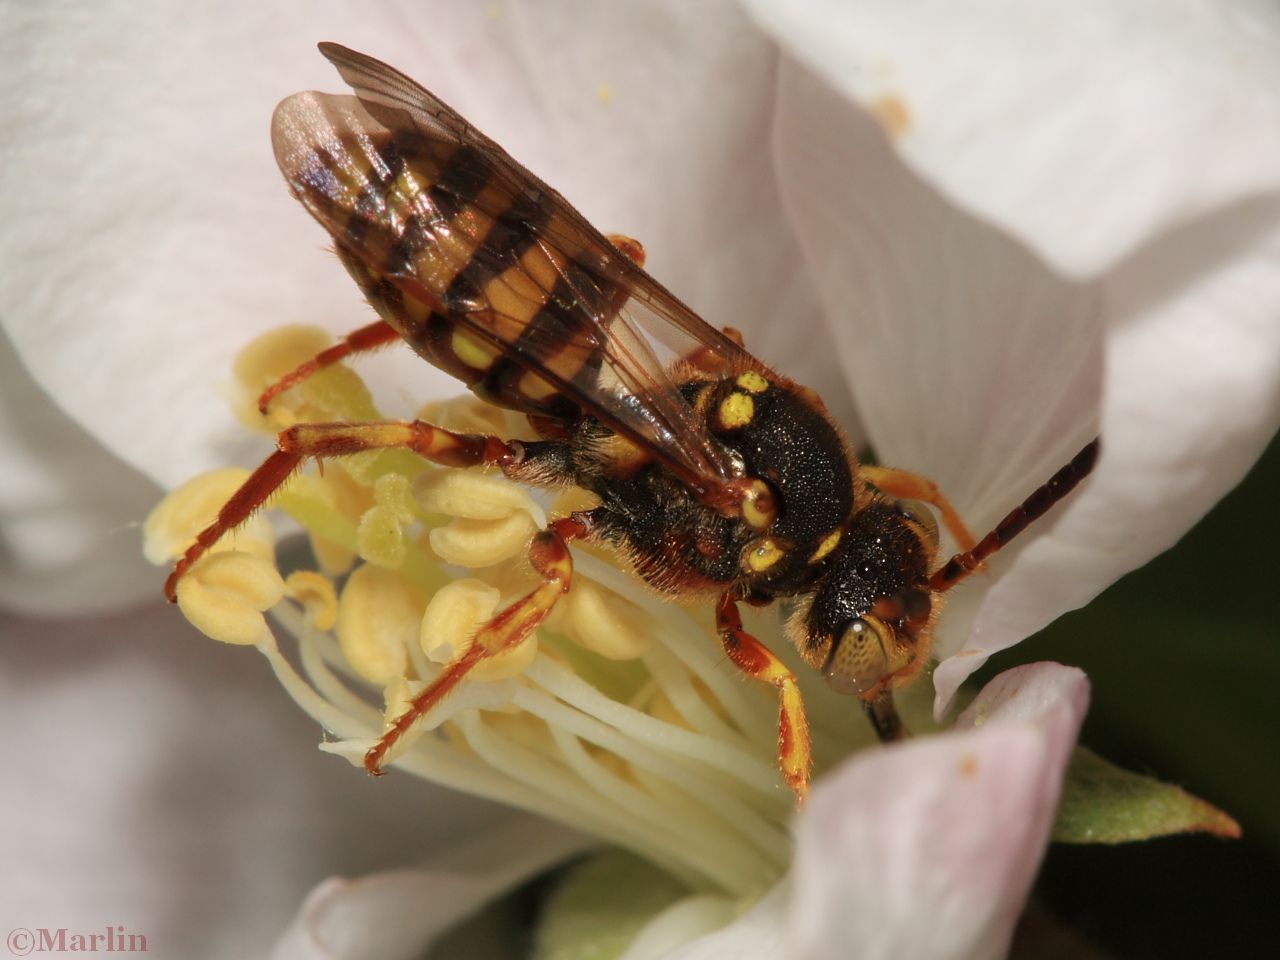 Cuckoo bee taking nectar